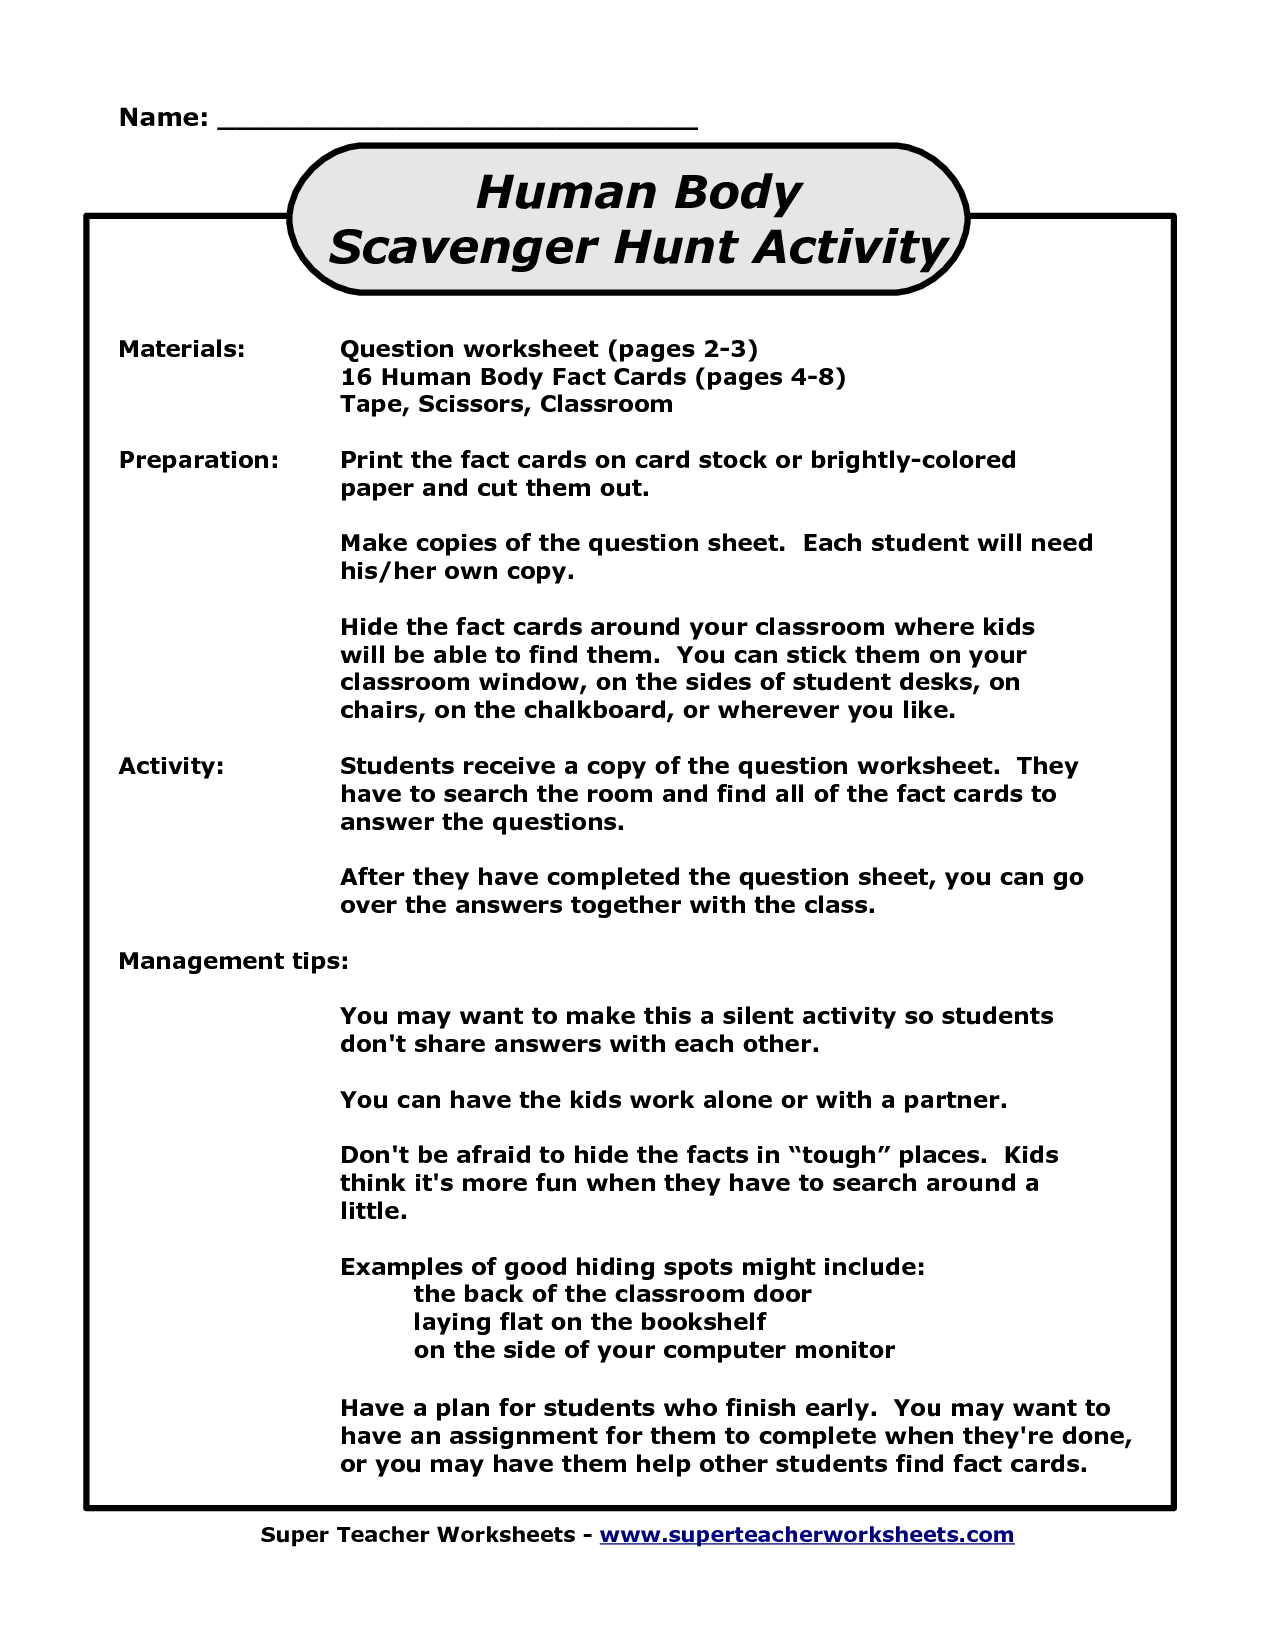 Human Scavenger Hunt Worksheet Image